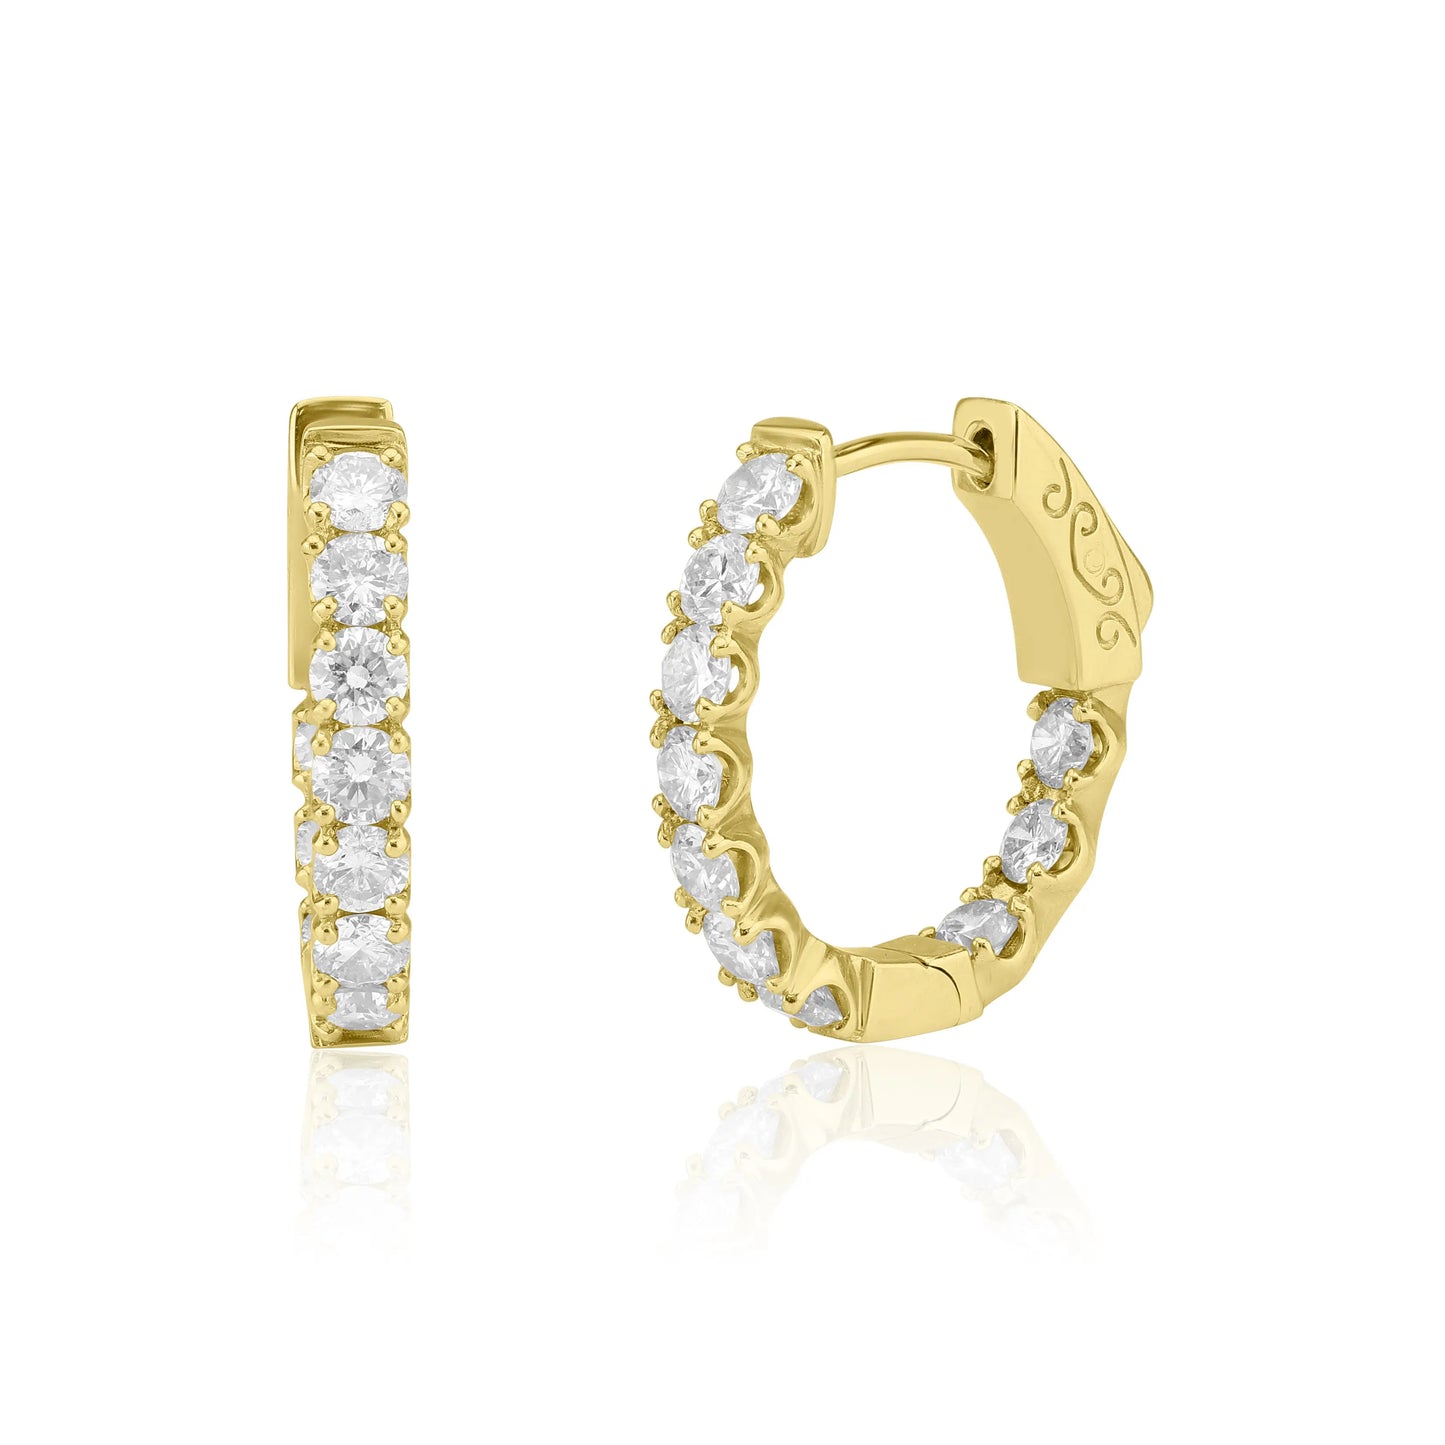 White Gold Earrings Inside Out Diamond Hoop Earrings dansonjewelers Danson Jewelers 